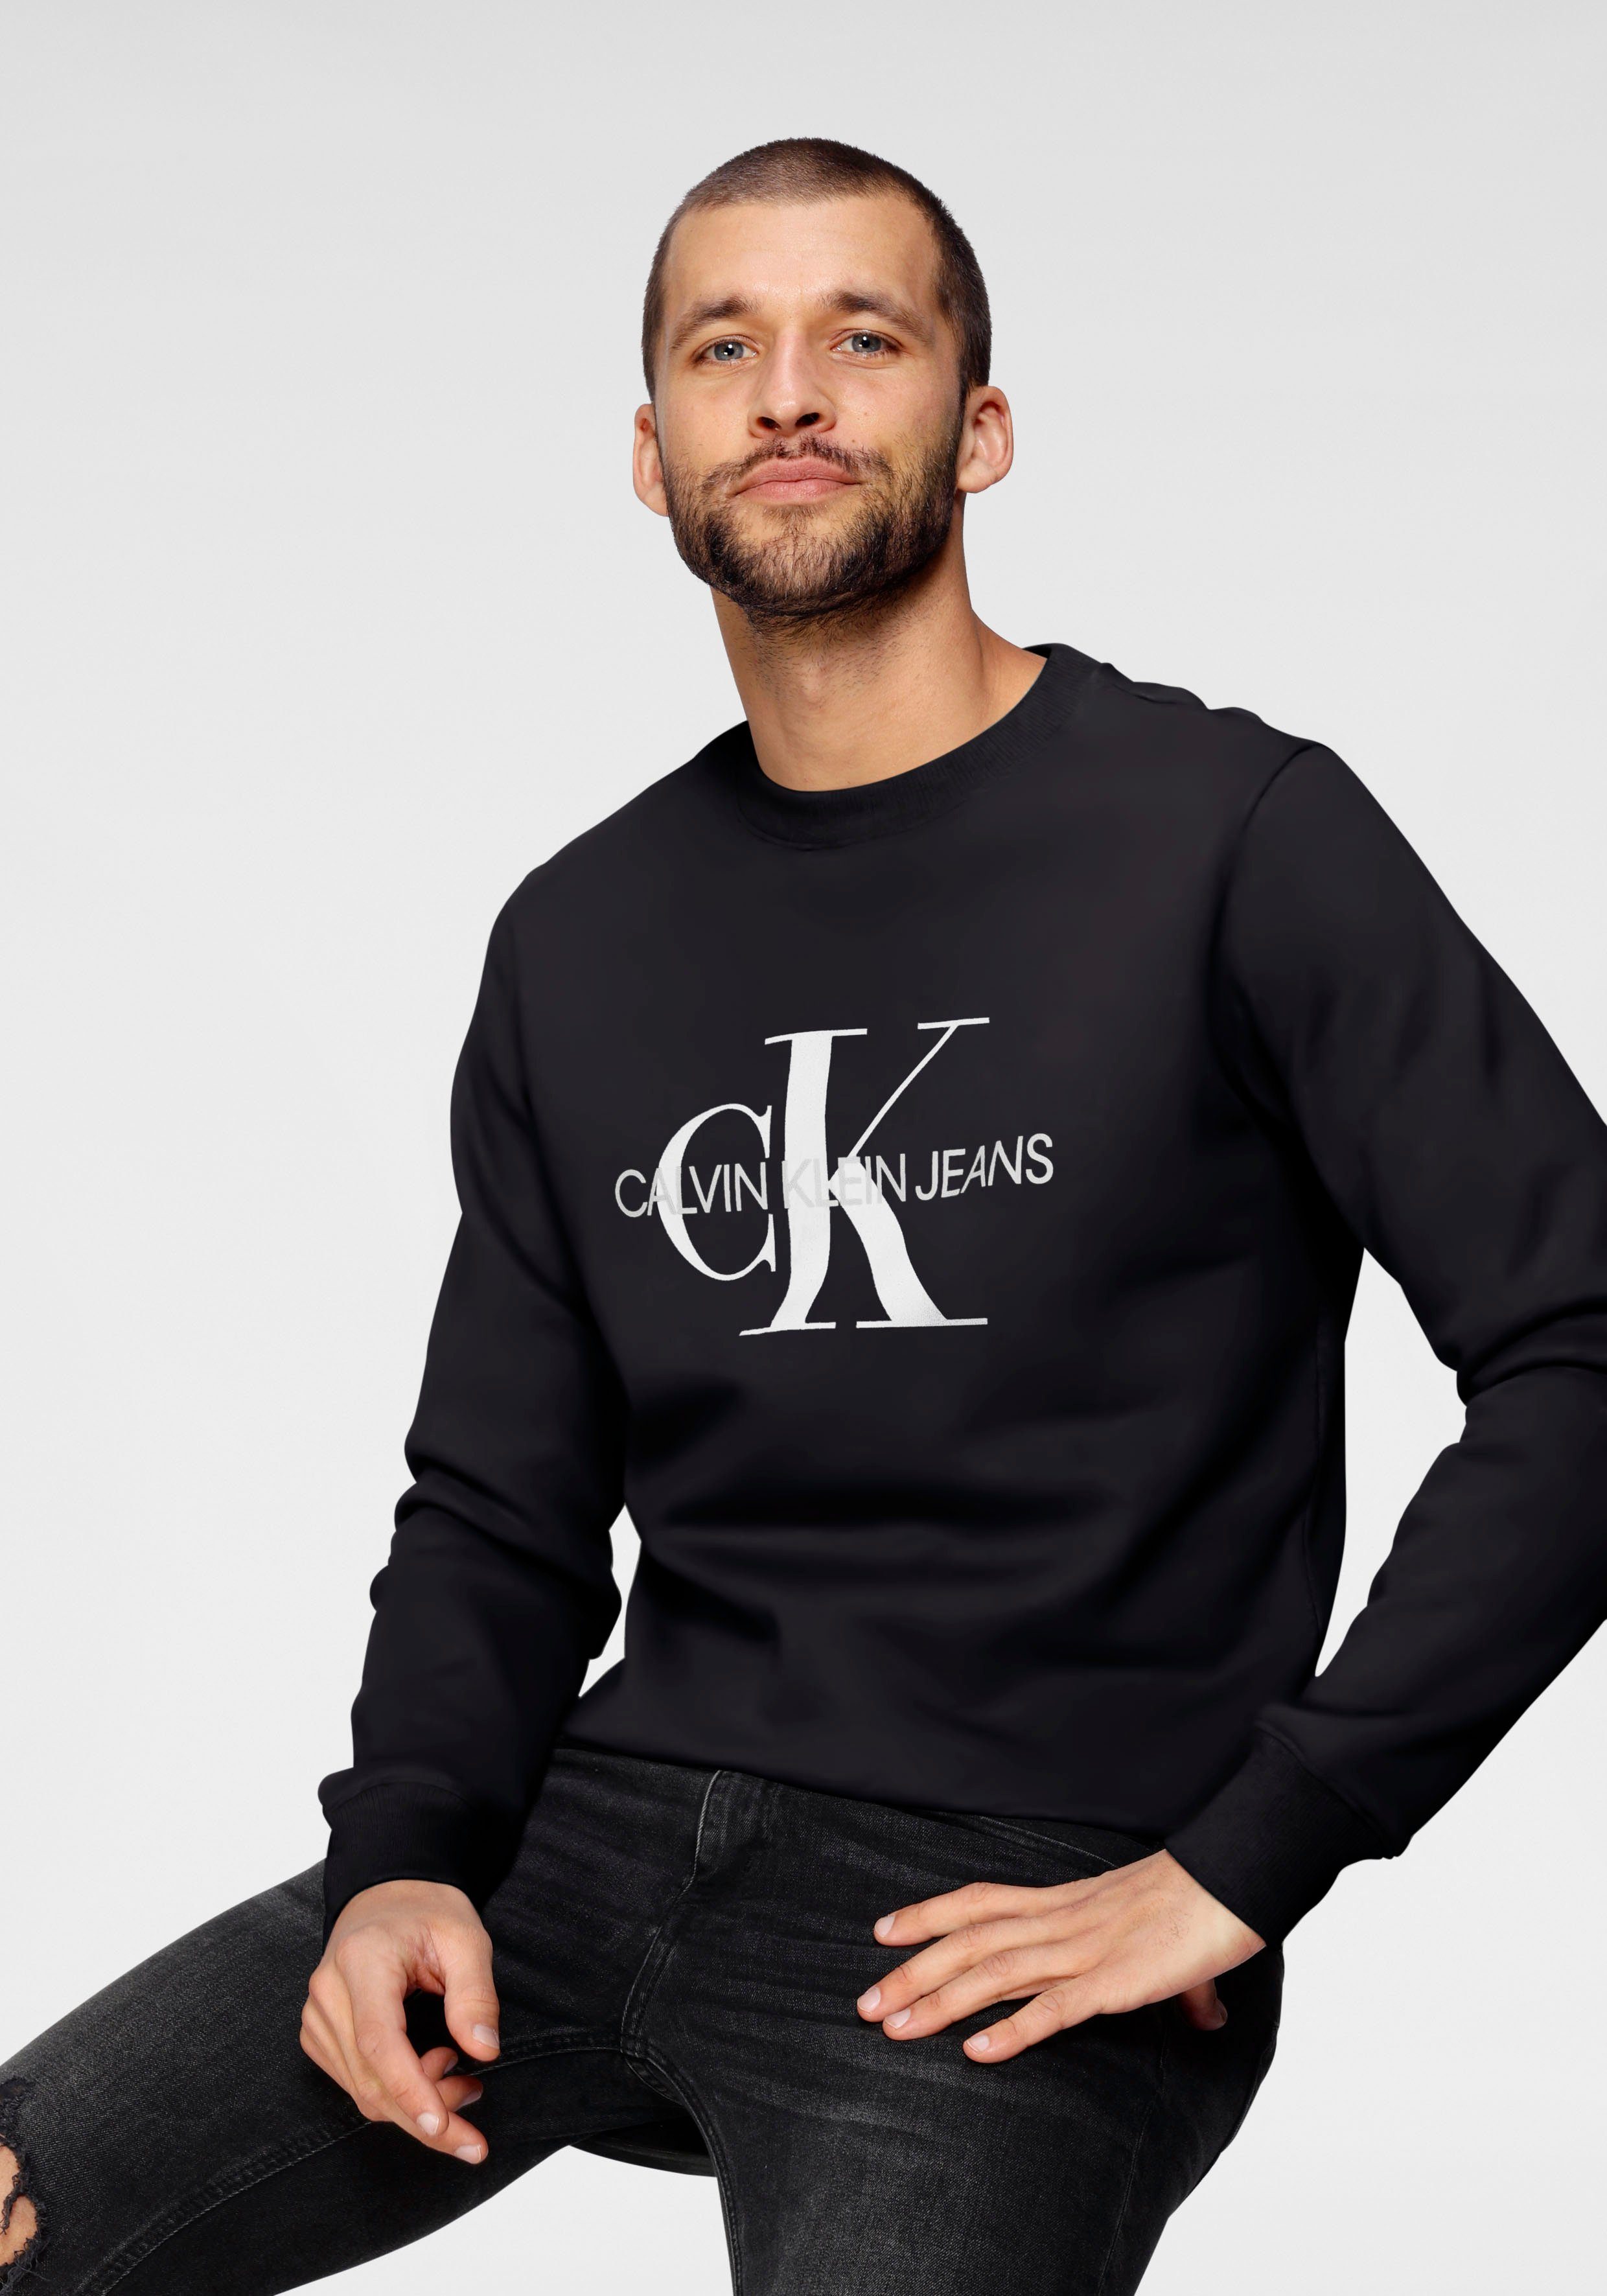 Schwarze Calvin Klein Herren Sweatshirts online kaufen | OTTO